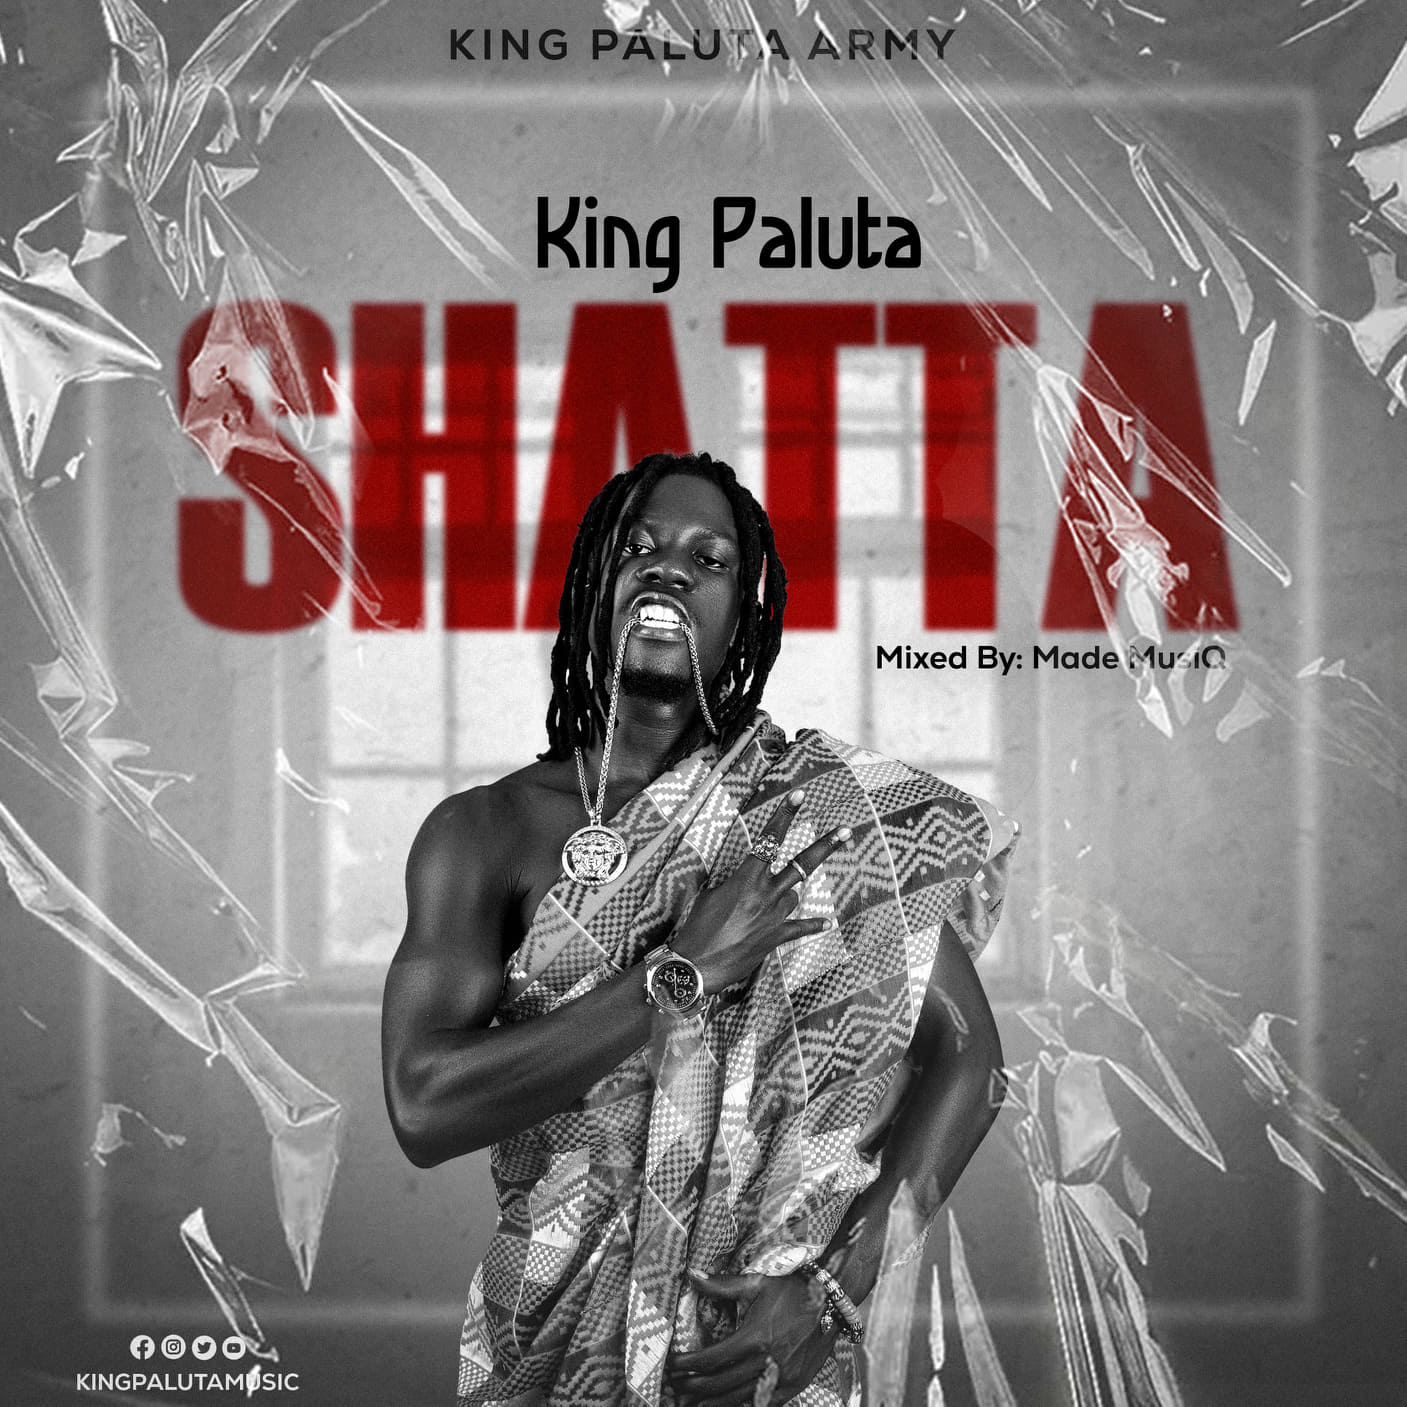 King Paluta